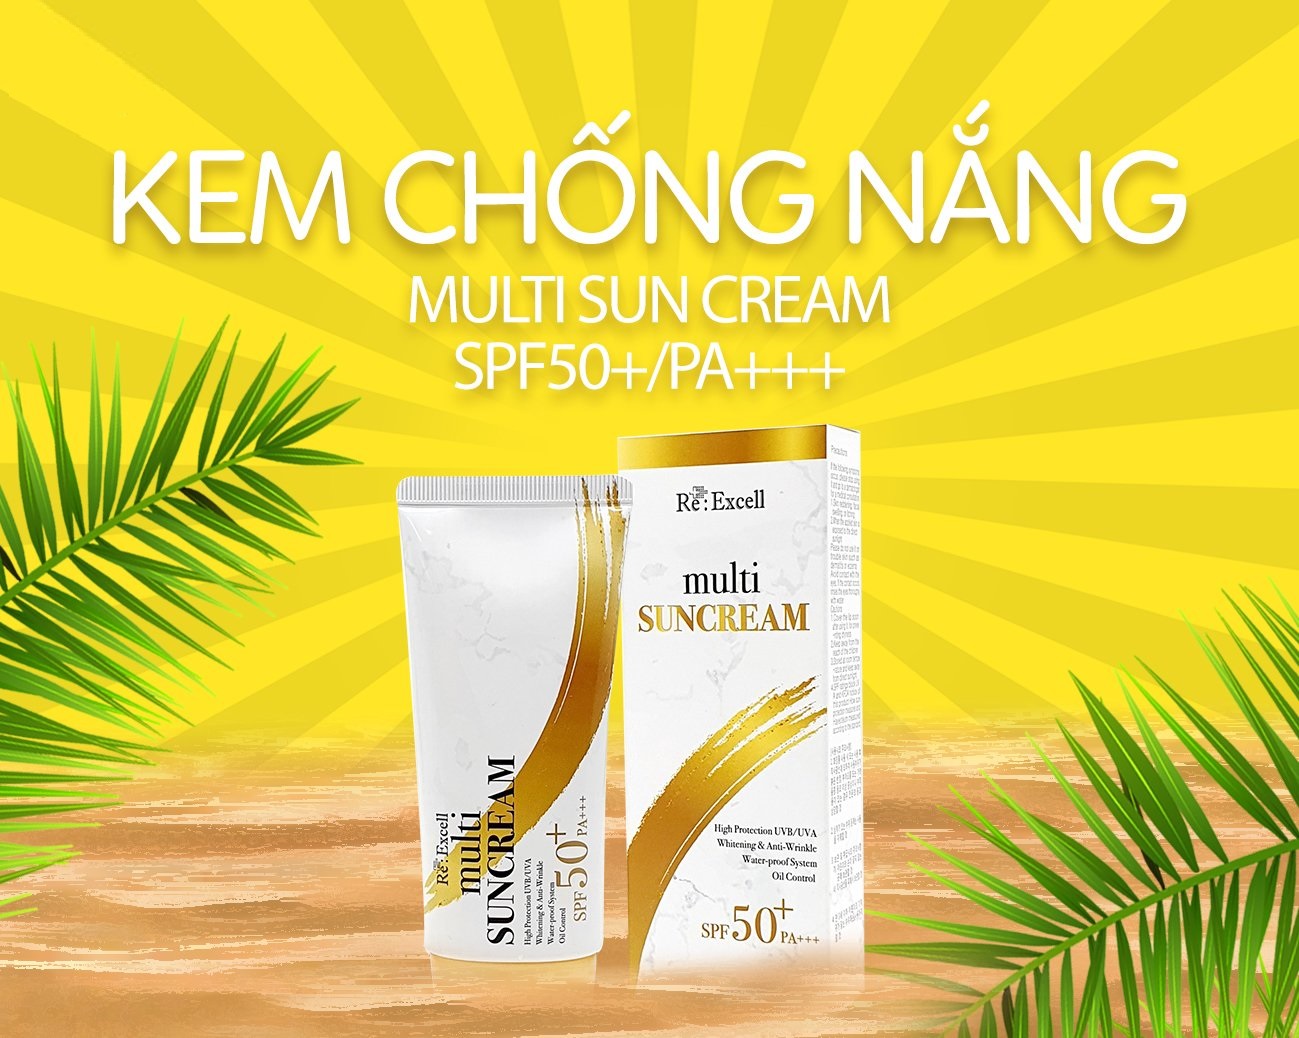 Combo 7 hộp Kem Chống Nắng Re:Excell Multi Sun Cream SPF 50+/ PA+++ sản phẩm nhập khẩu chính ngạch Hàn Quốc